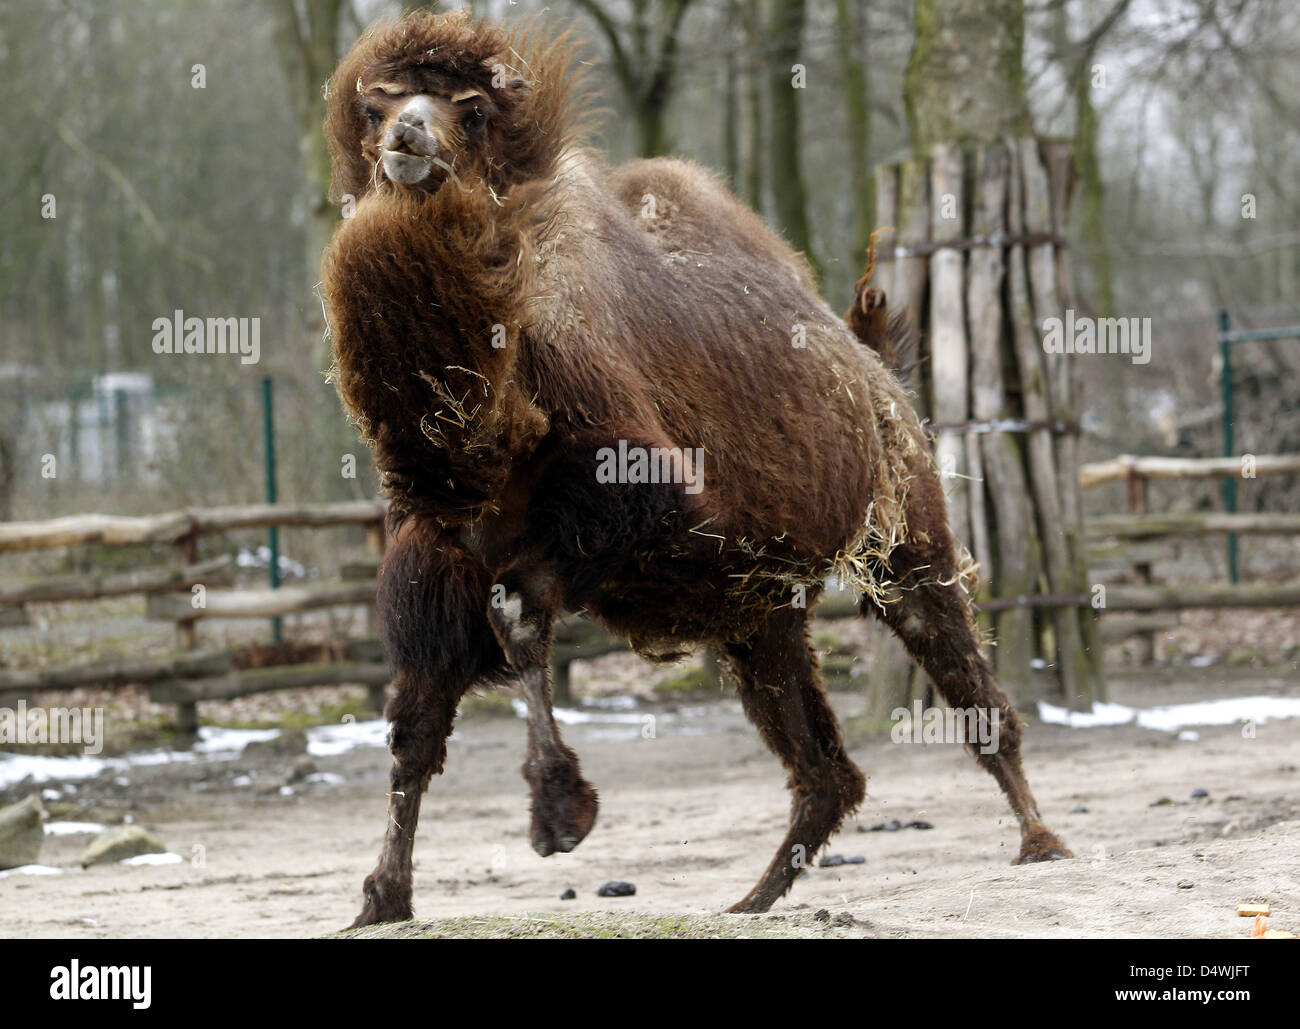 Il cammello Bactrian corre attraverso il suo involucro allo zoo di Gelsenkirchen, Germania, 13 marzo 2013. Lo zoo si sta preparando per la prossima stagione spraing sperando per il buon tempo per attarct visitatori. Foto: Roland Weihrauch Foto Stock